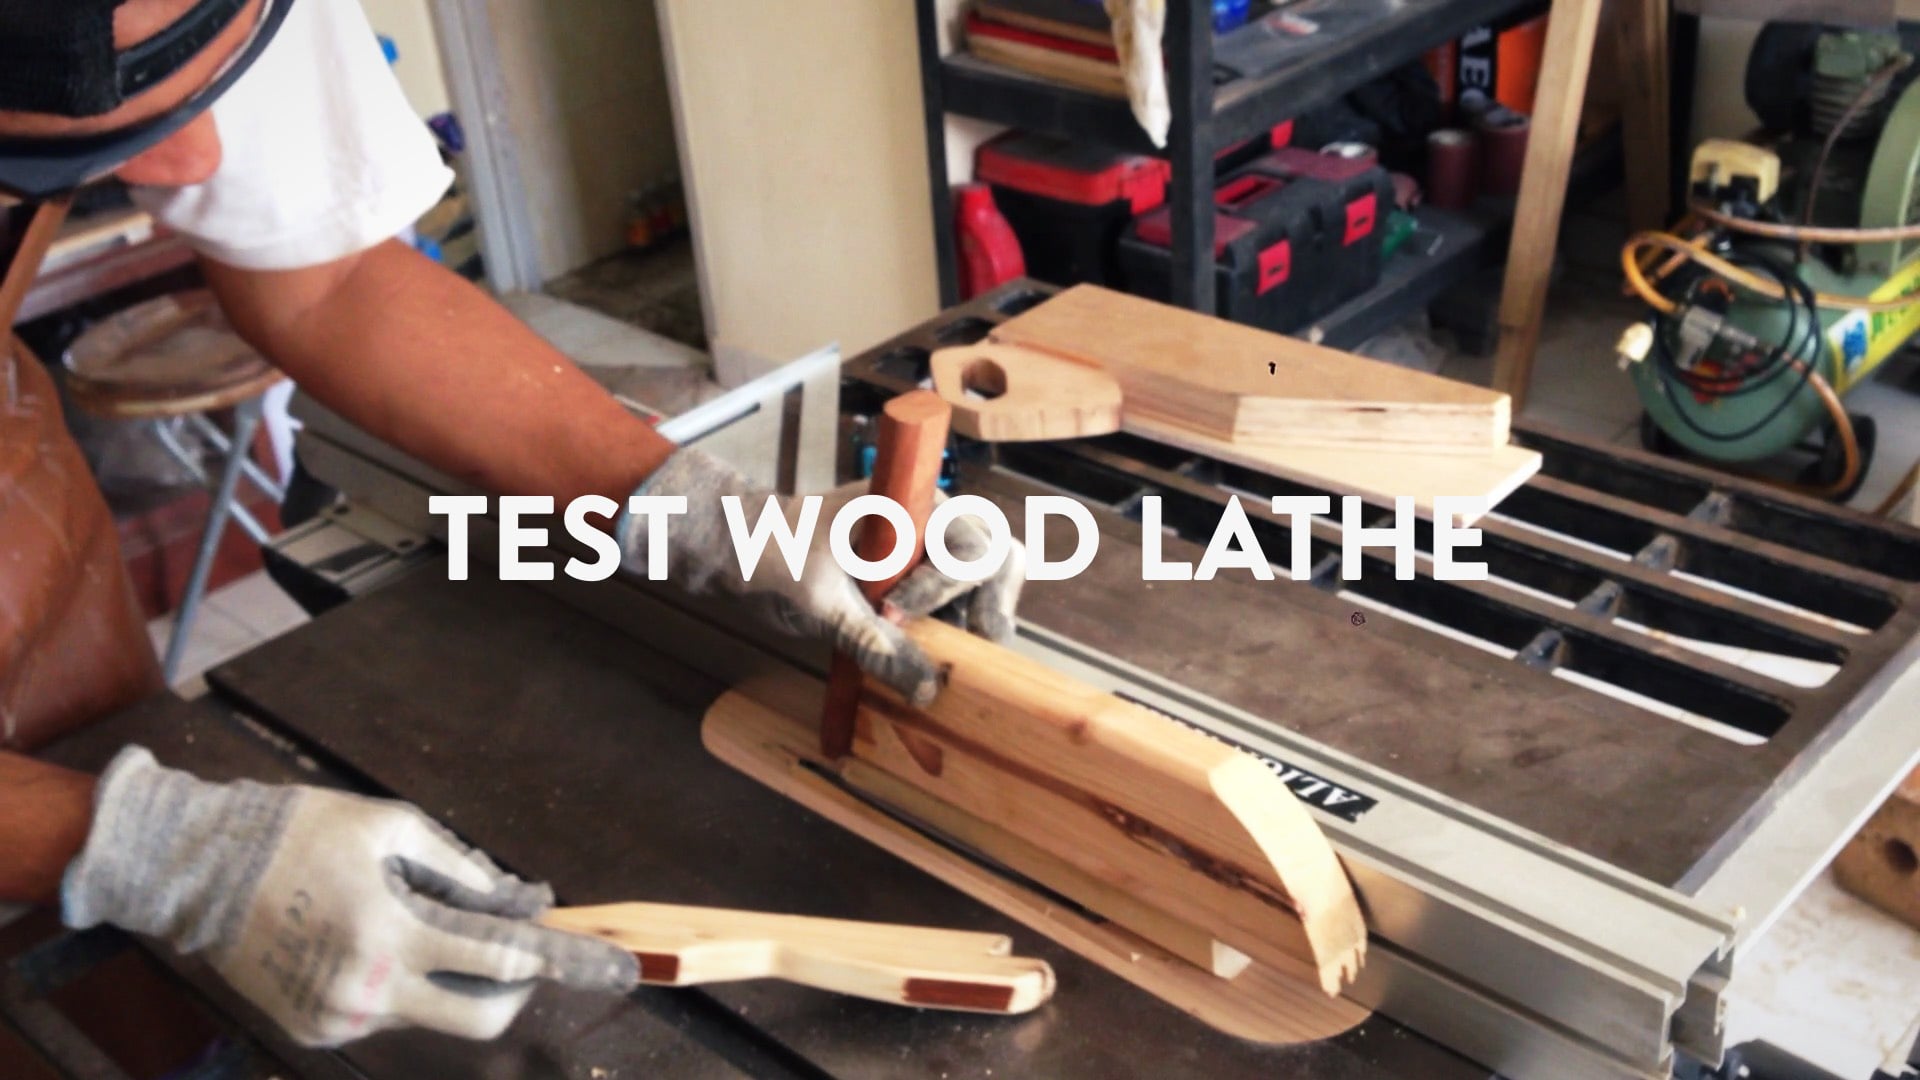 Test Wood Lathe